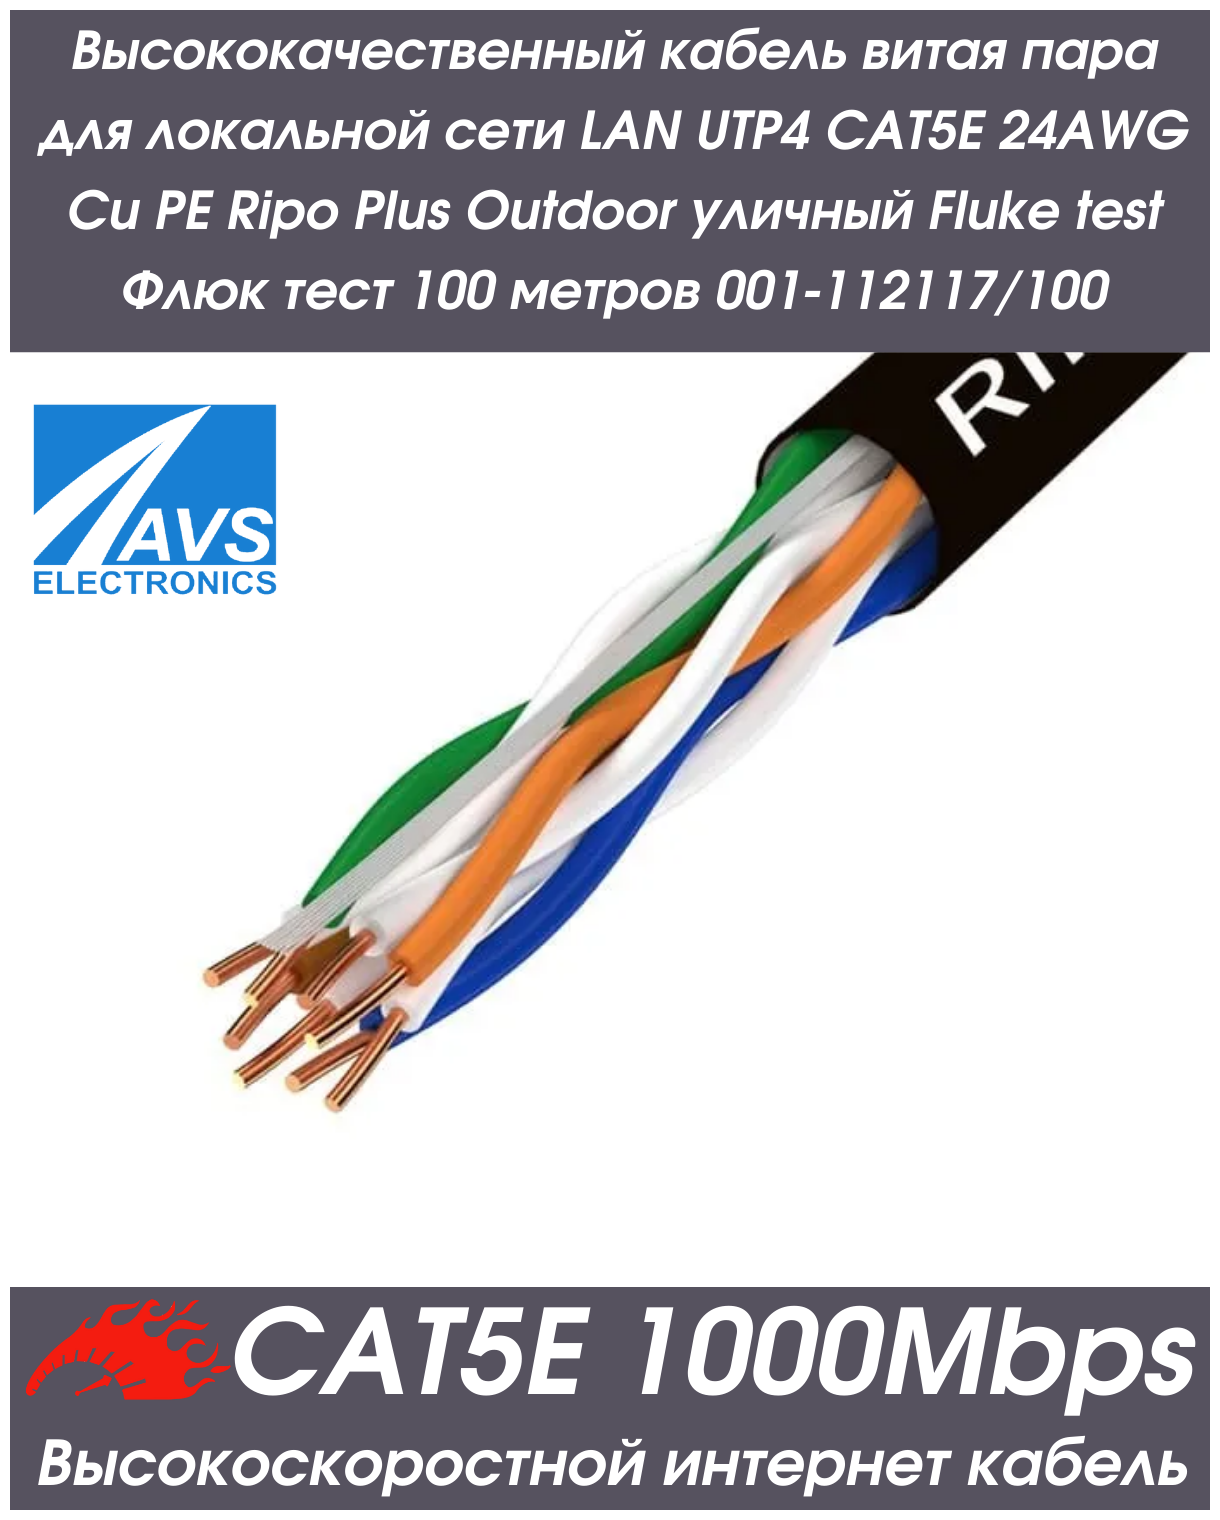 Высококачественный кабель витая пара для локальной сети LAN UTP4 CAT5E 24AWG Cu PE Plus уличный Fluke test Флюк тест 100 метров 001-112117/100